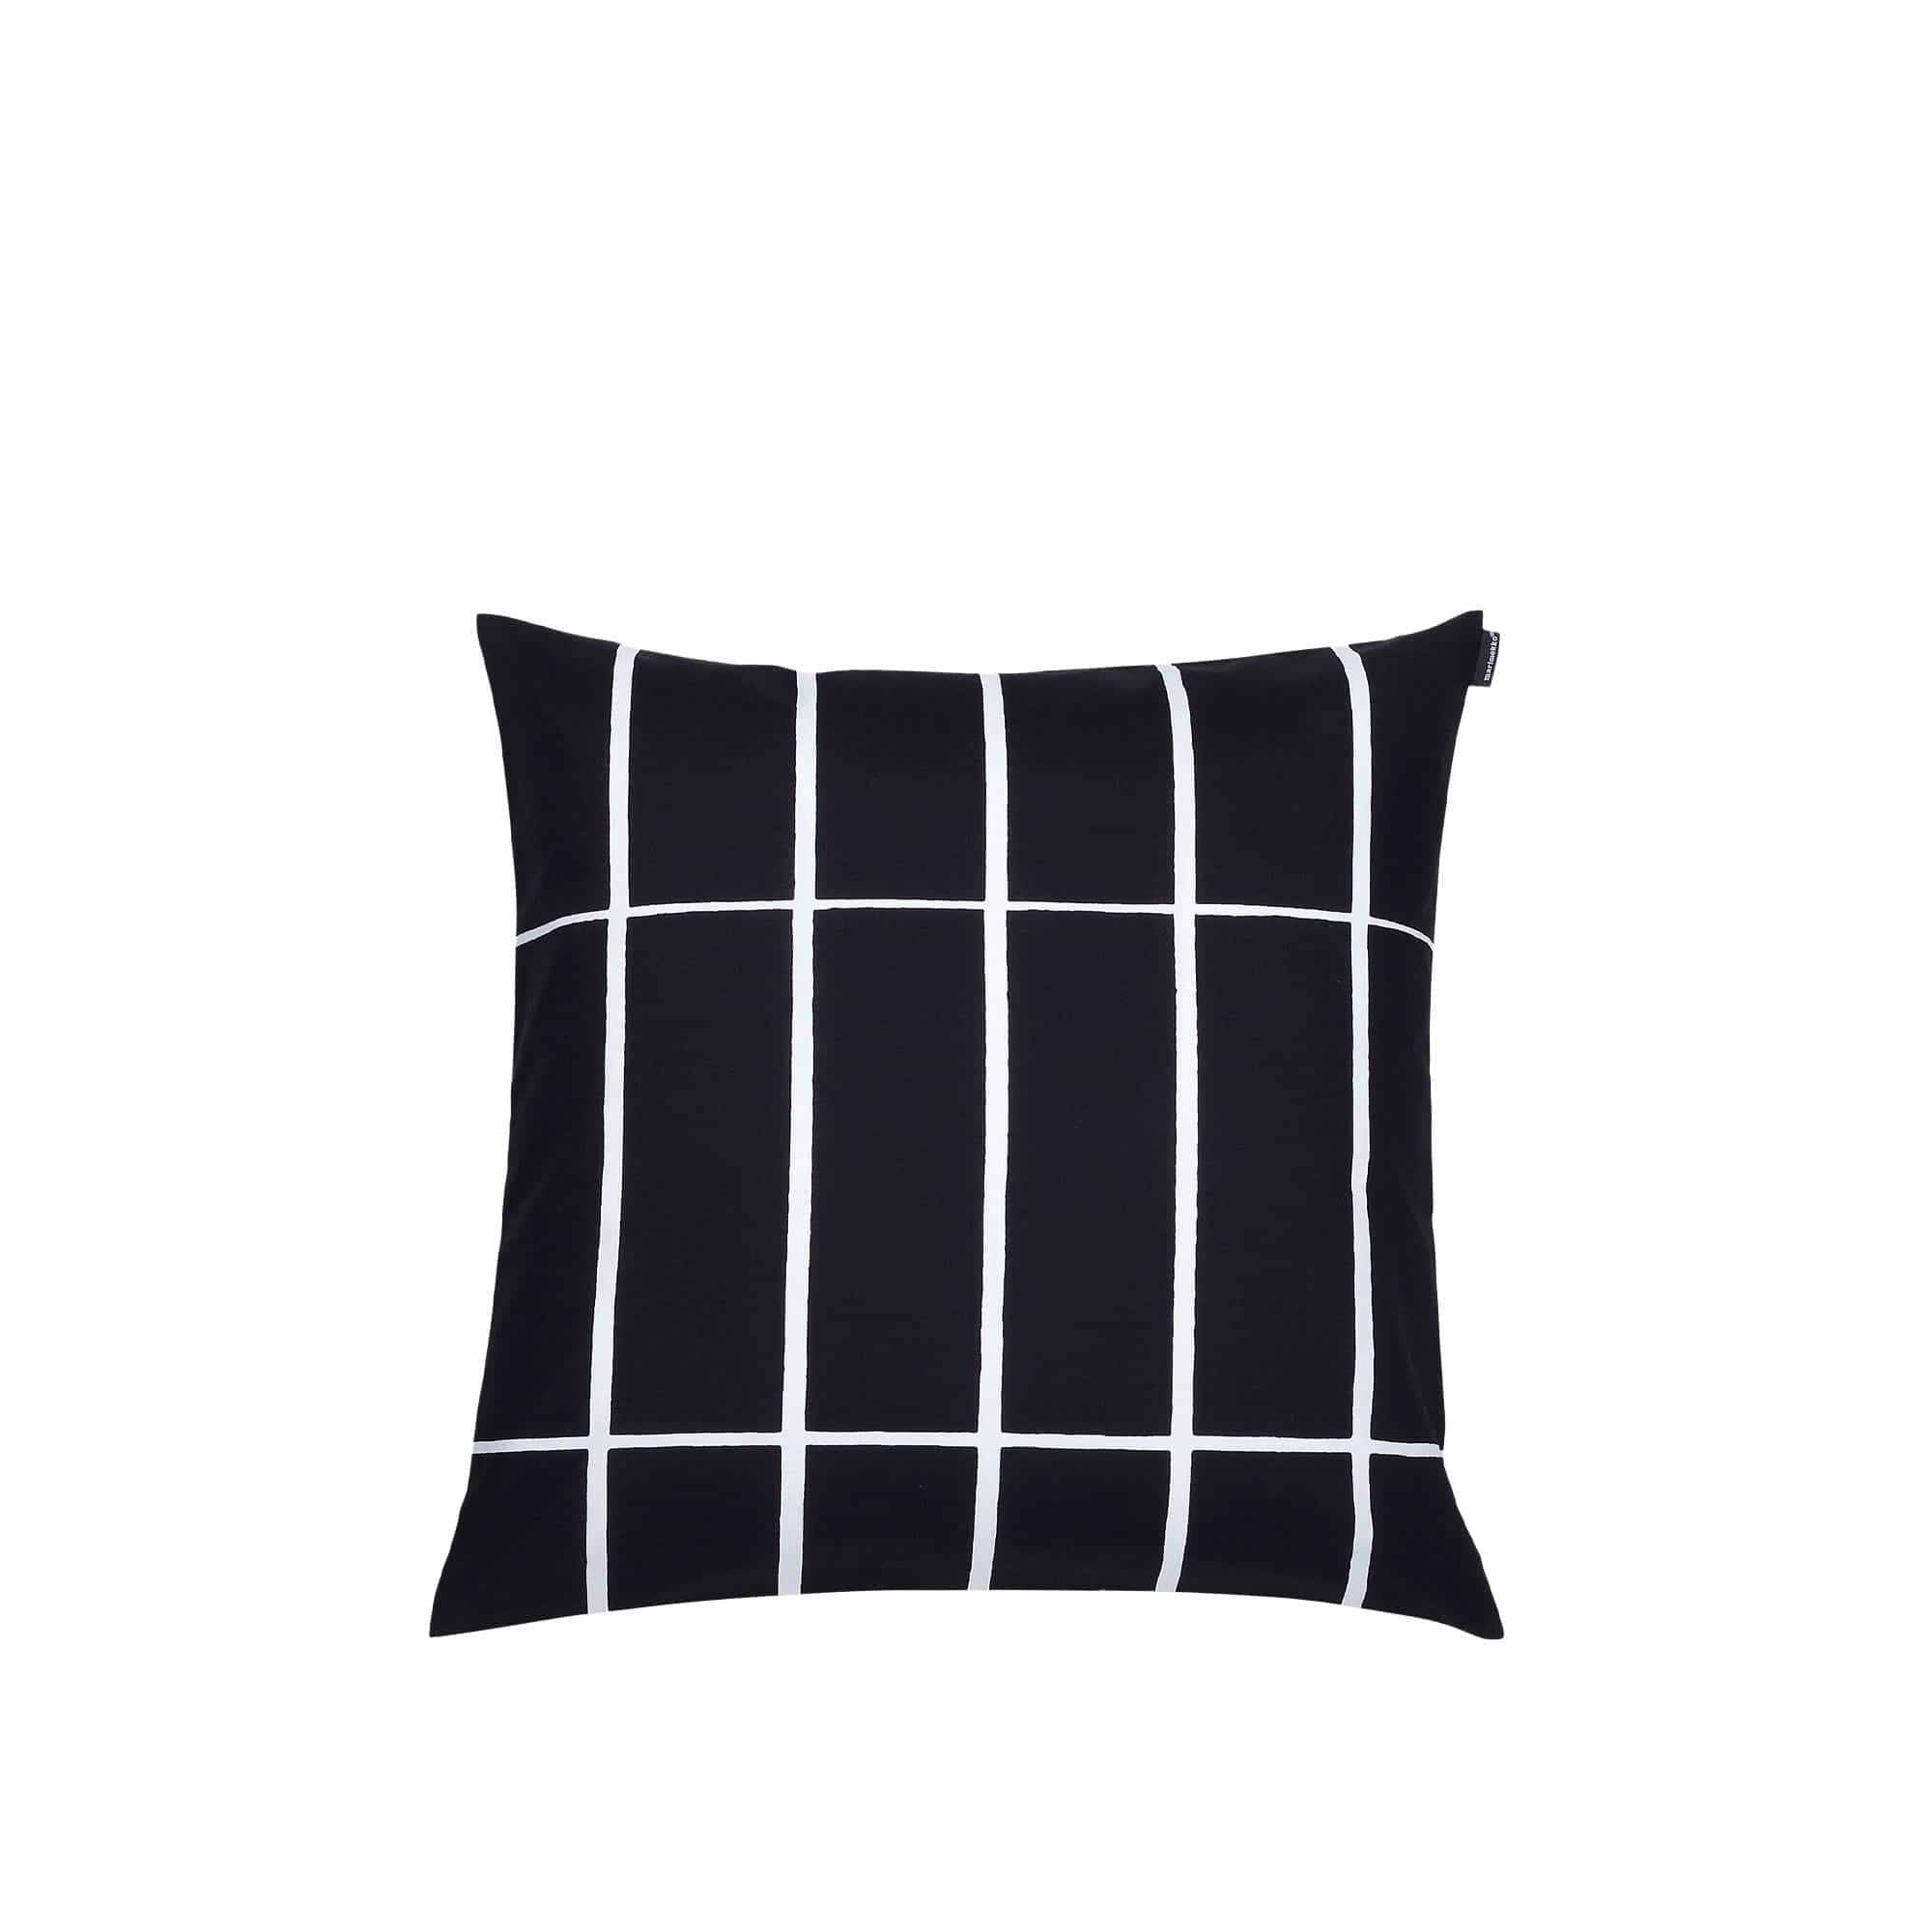 Tiiliskivi Cushion Cover 50X50 cm Black, White